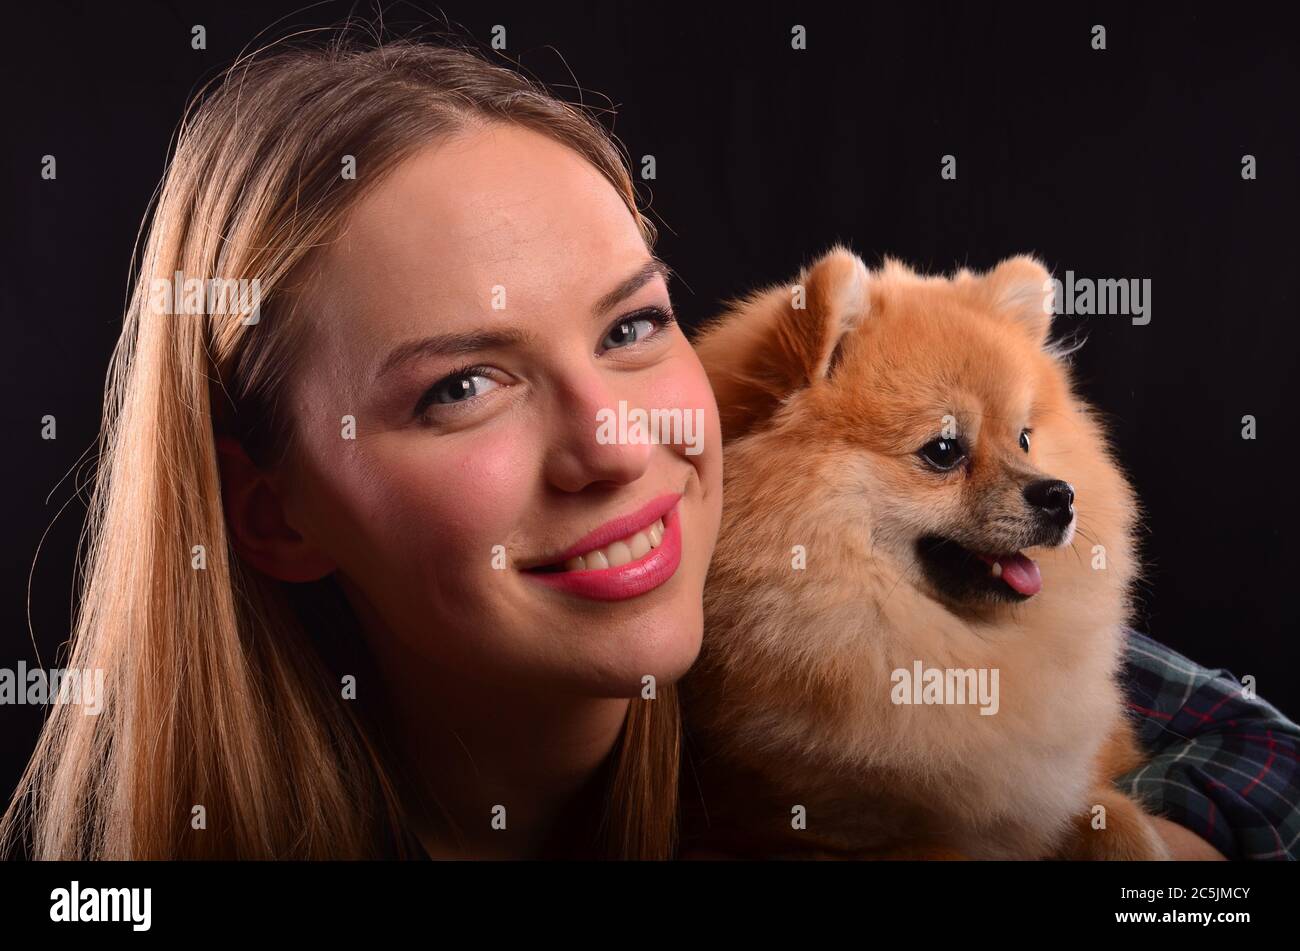 Portrait de belle fille blonde souriante et jeune Pomeranian ou Spitz chien avec fourrure moelleuse Banque D'Images